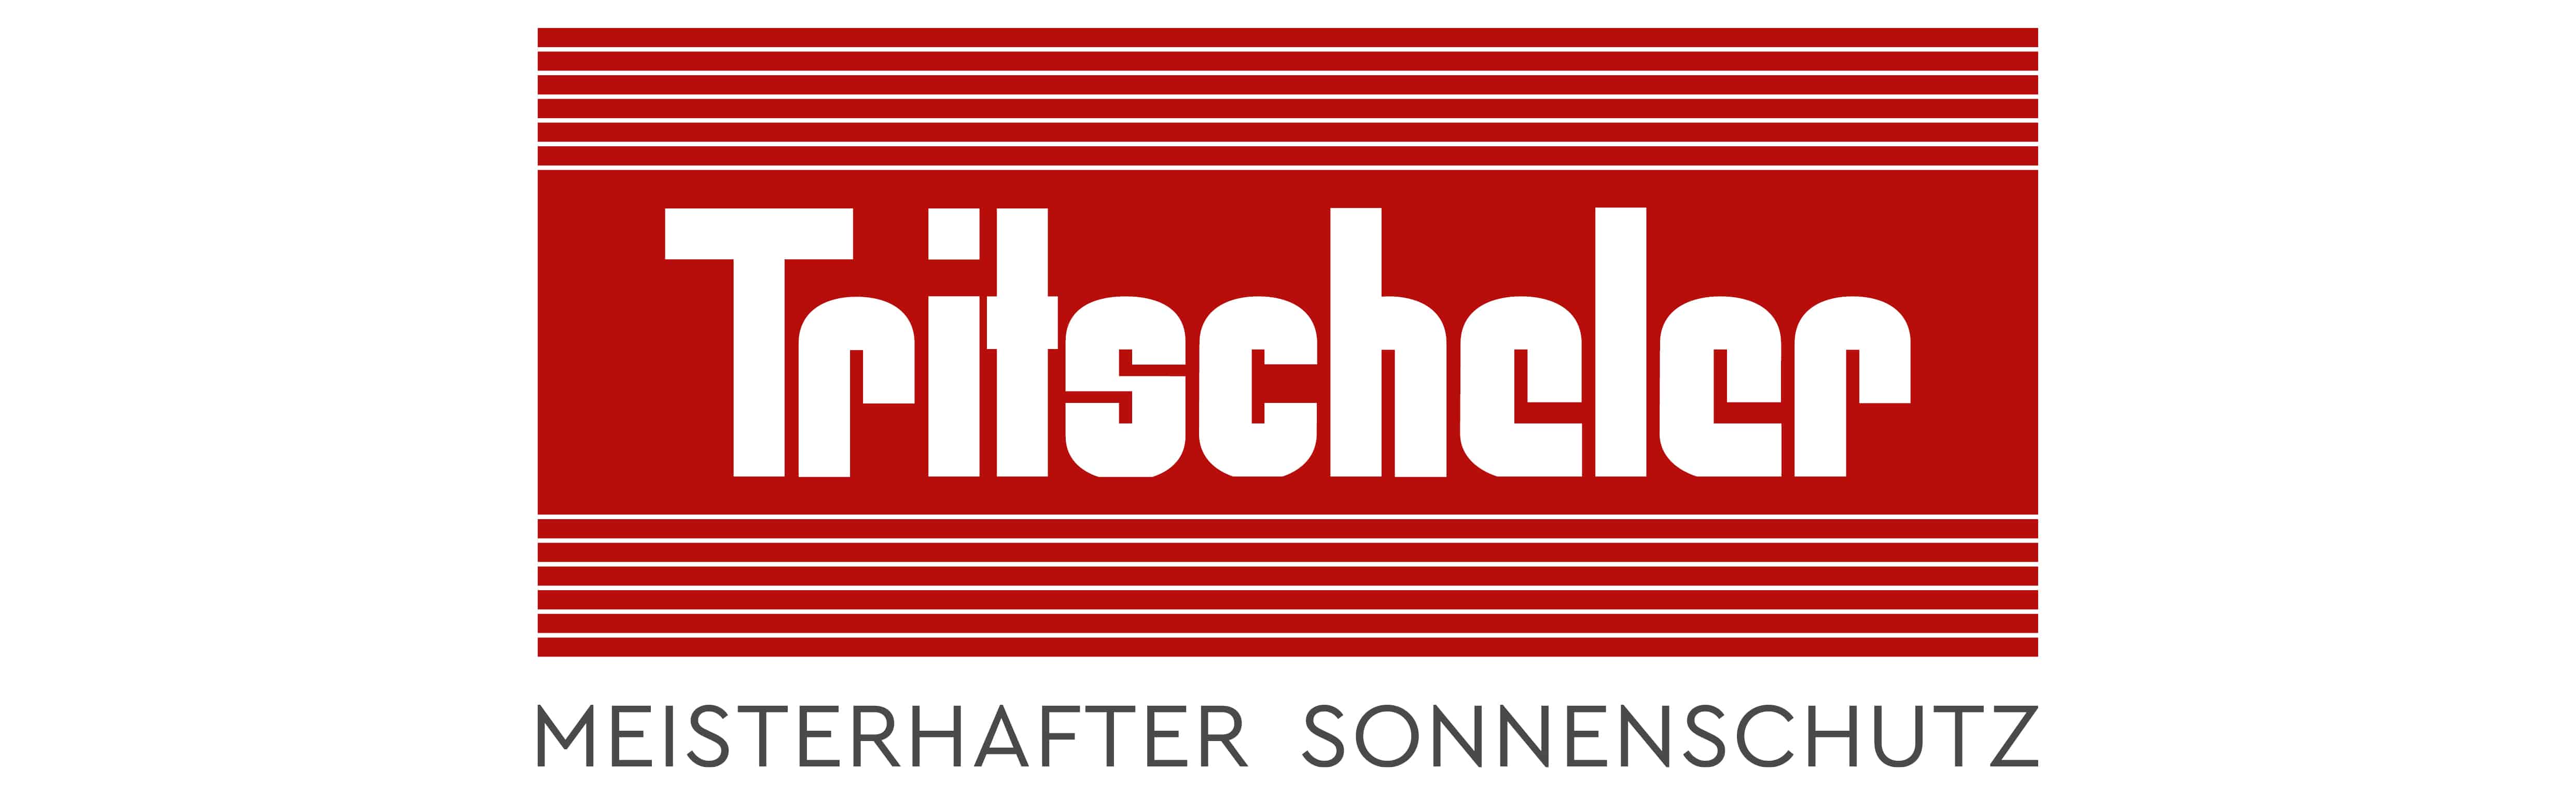 Tritscheler Logo